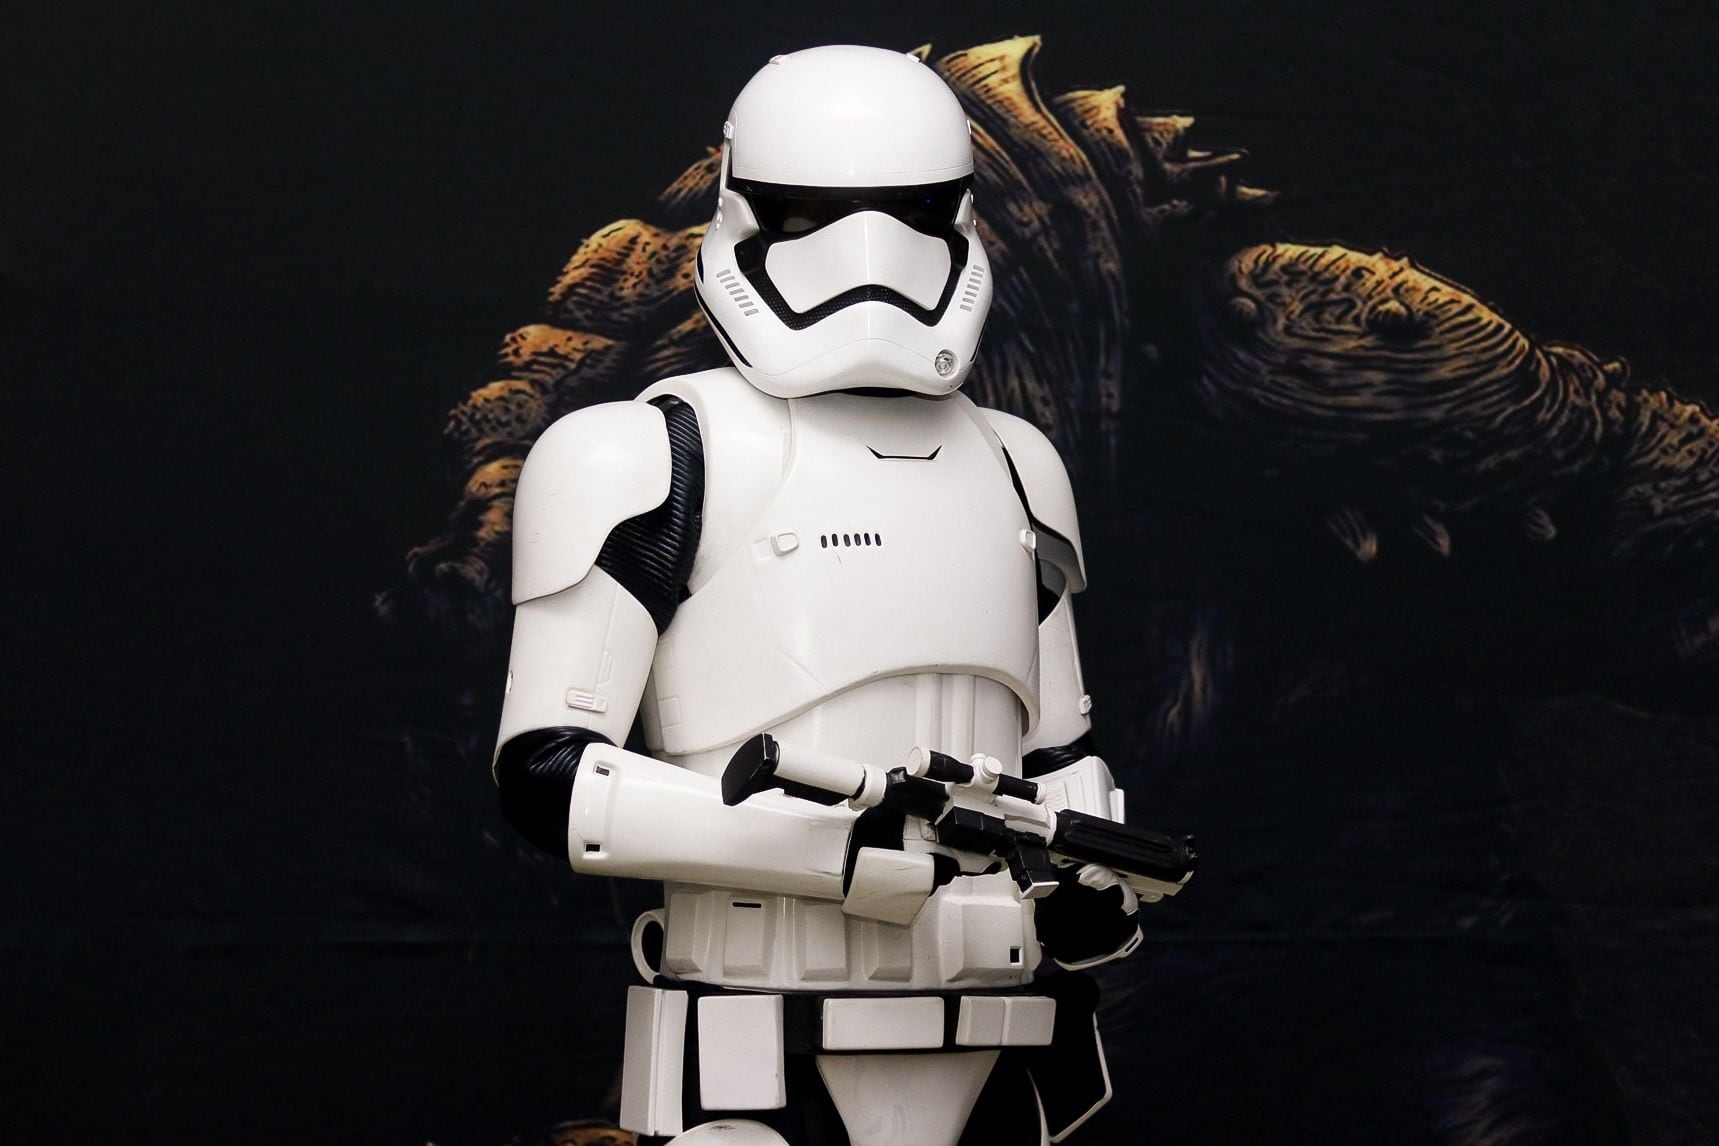 Los mayores fanáticos de Star Wars compraron entradas para ambos días del Cómic Con Costa Rica. A lo largo de estos días, caminarán por los pasillos con armaduras de los Stormtroopers.